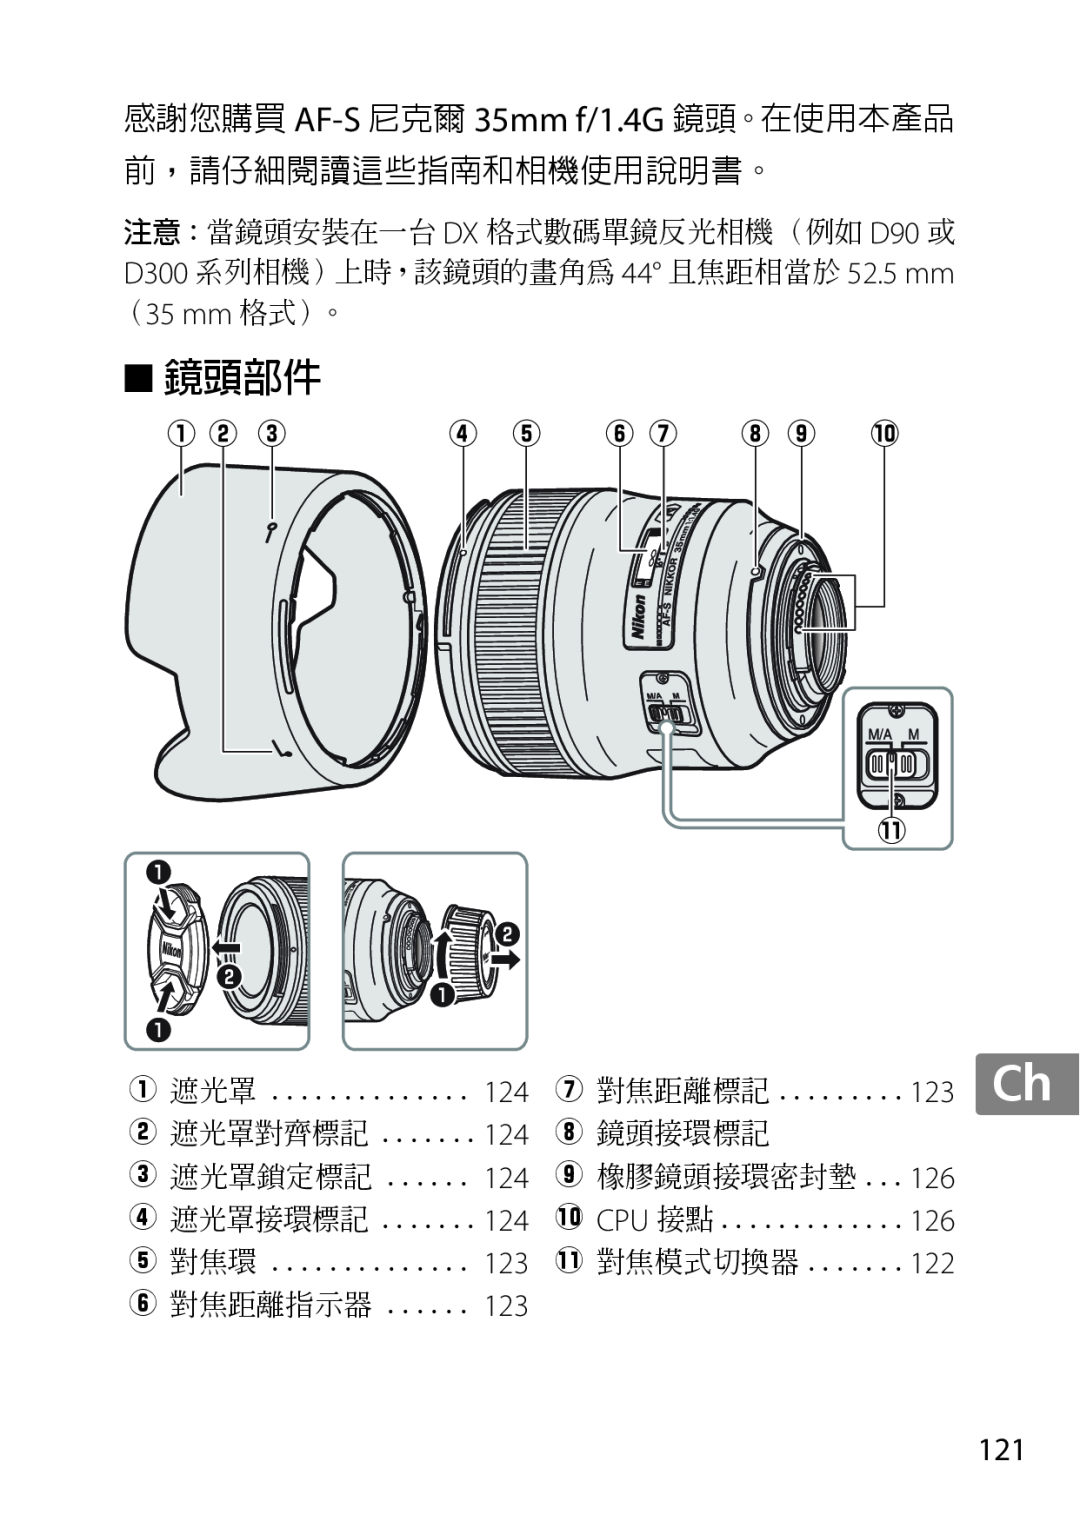 Nikon 35mmf14G, AF-S, 35mm f/1.4G, 2198 user manual 鏡頭部件, q w e, r t y u i o !0 